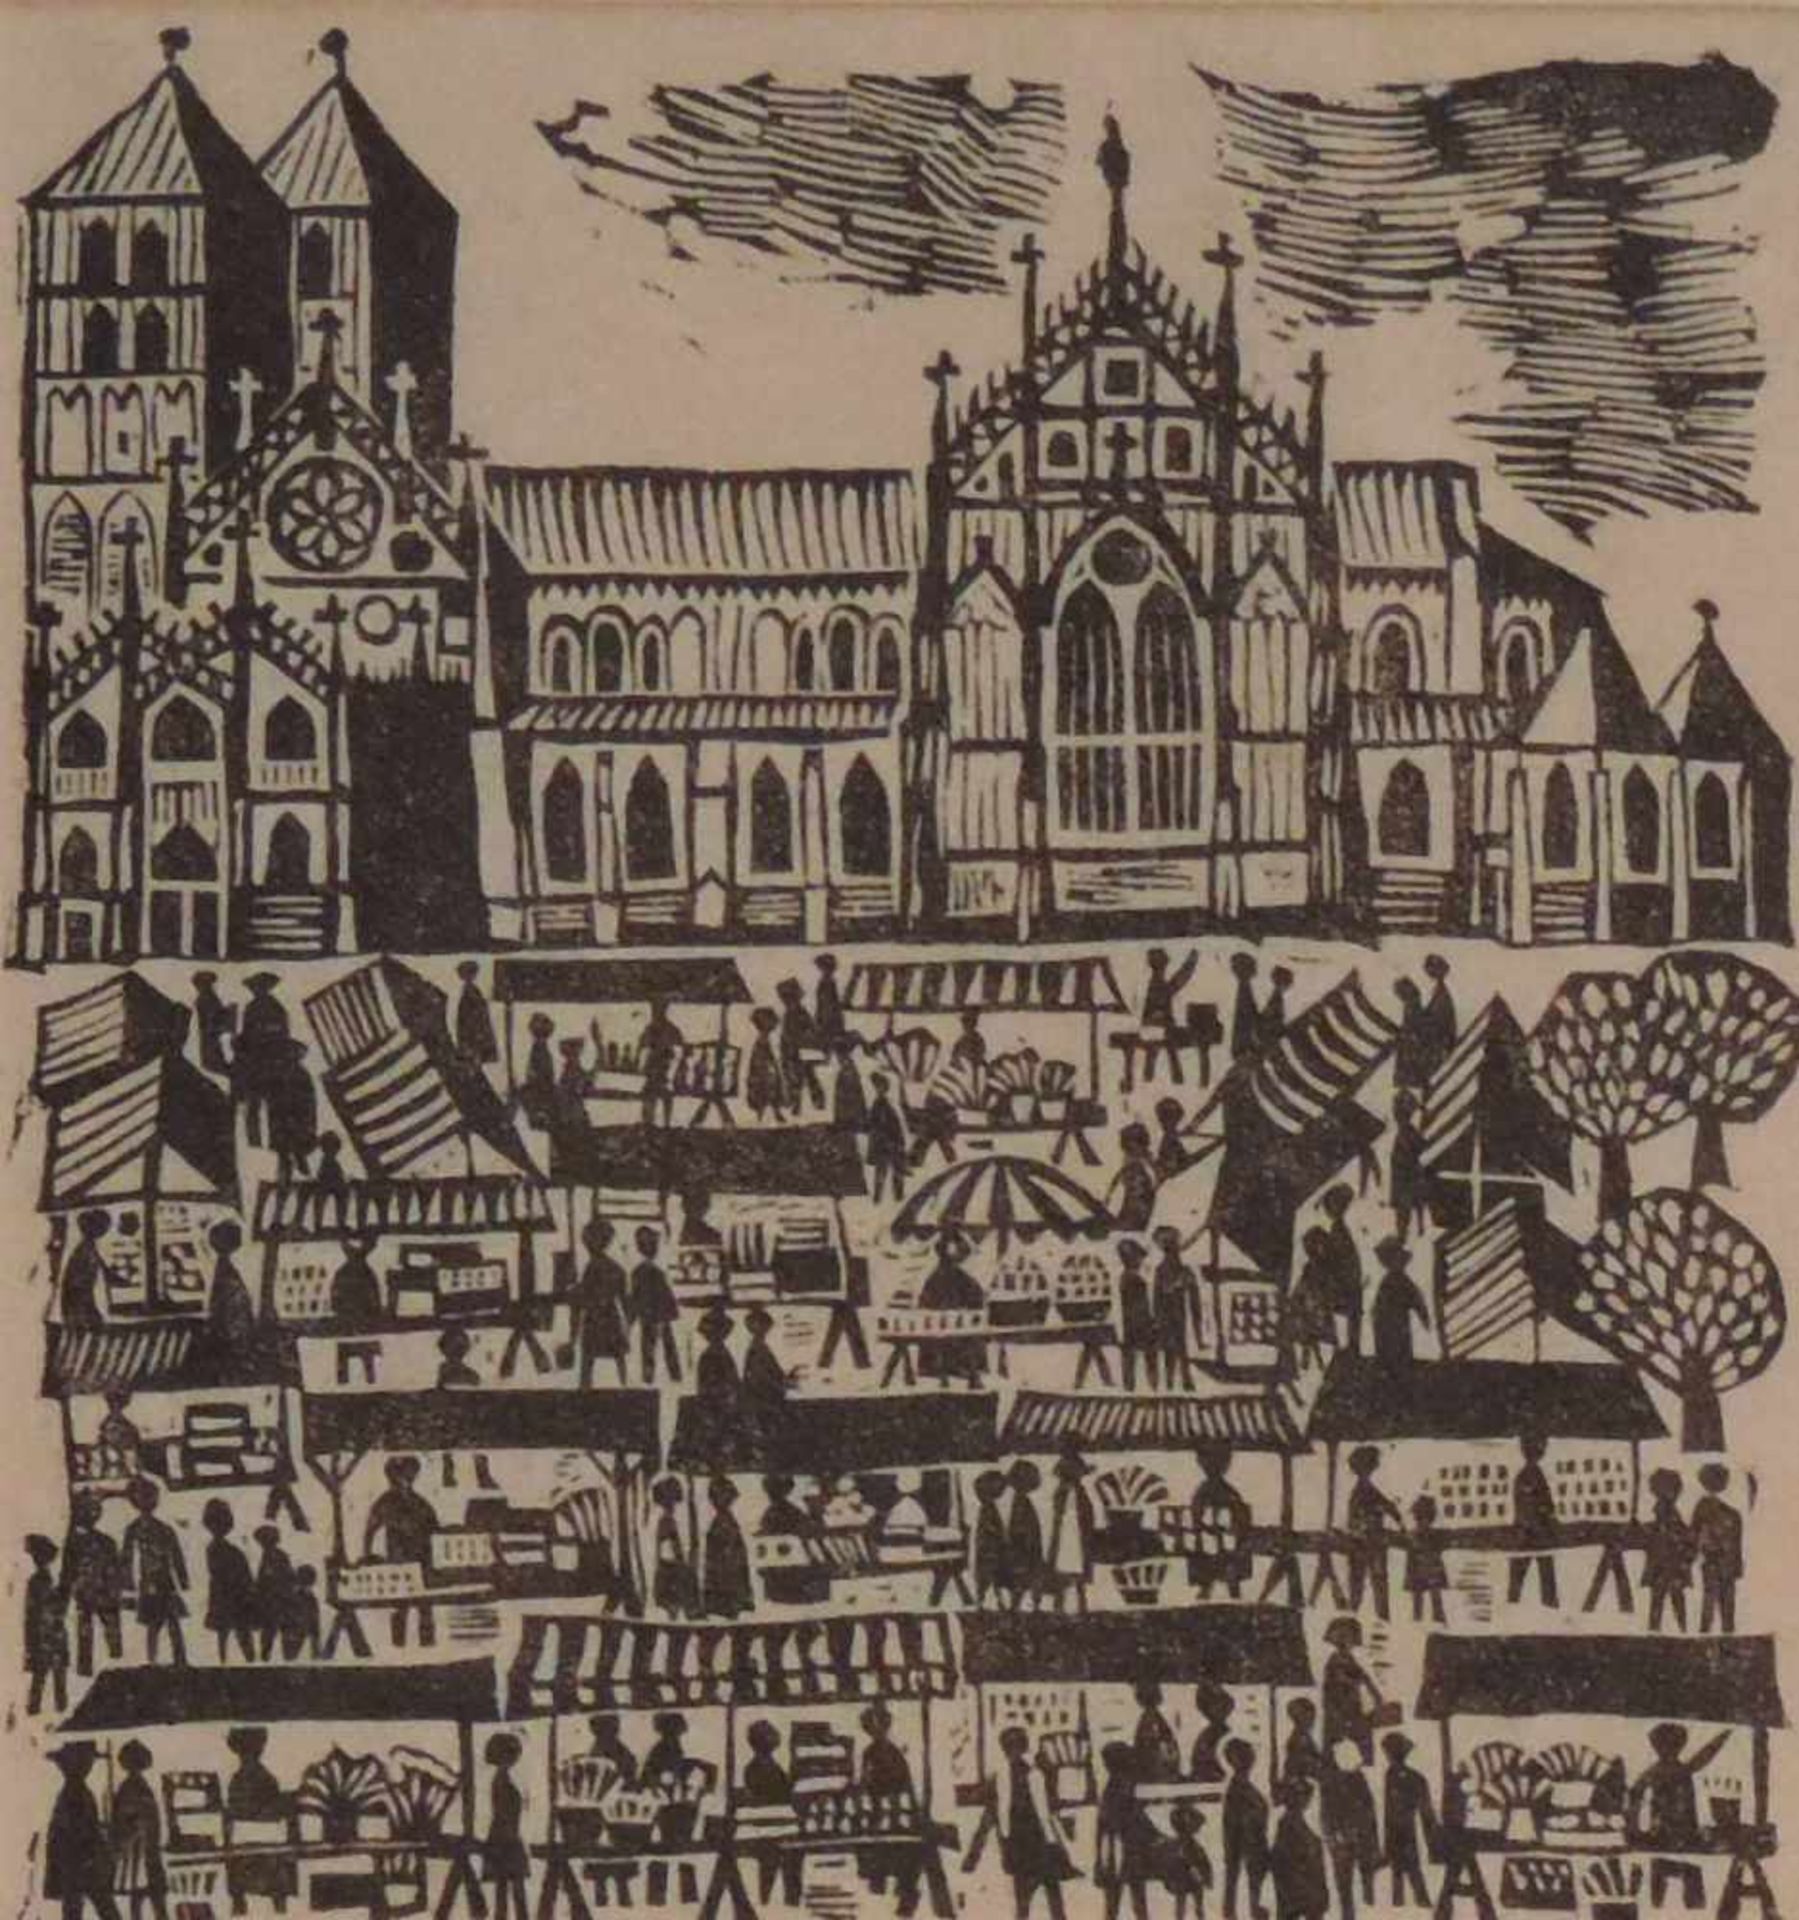 MÜNSTER, Linolschnitte, Satz von 3, Krameramtshaus Münster vor der Zerstörung 1939, sign WKS, dat - Image 5 of 6